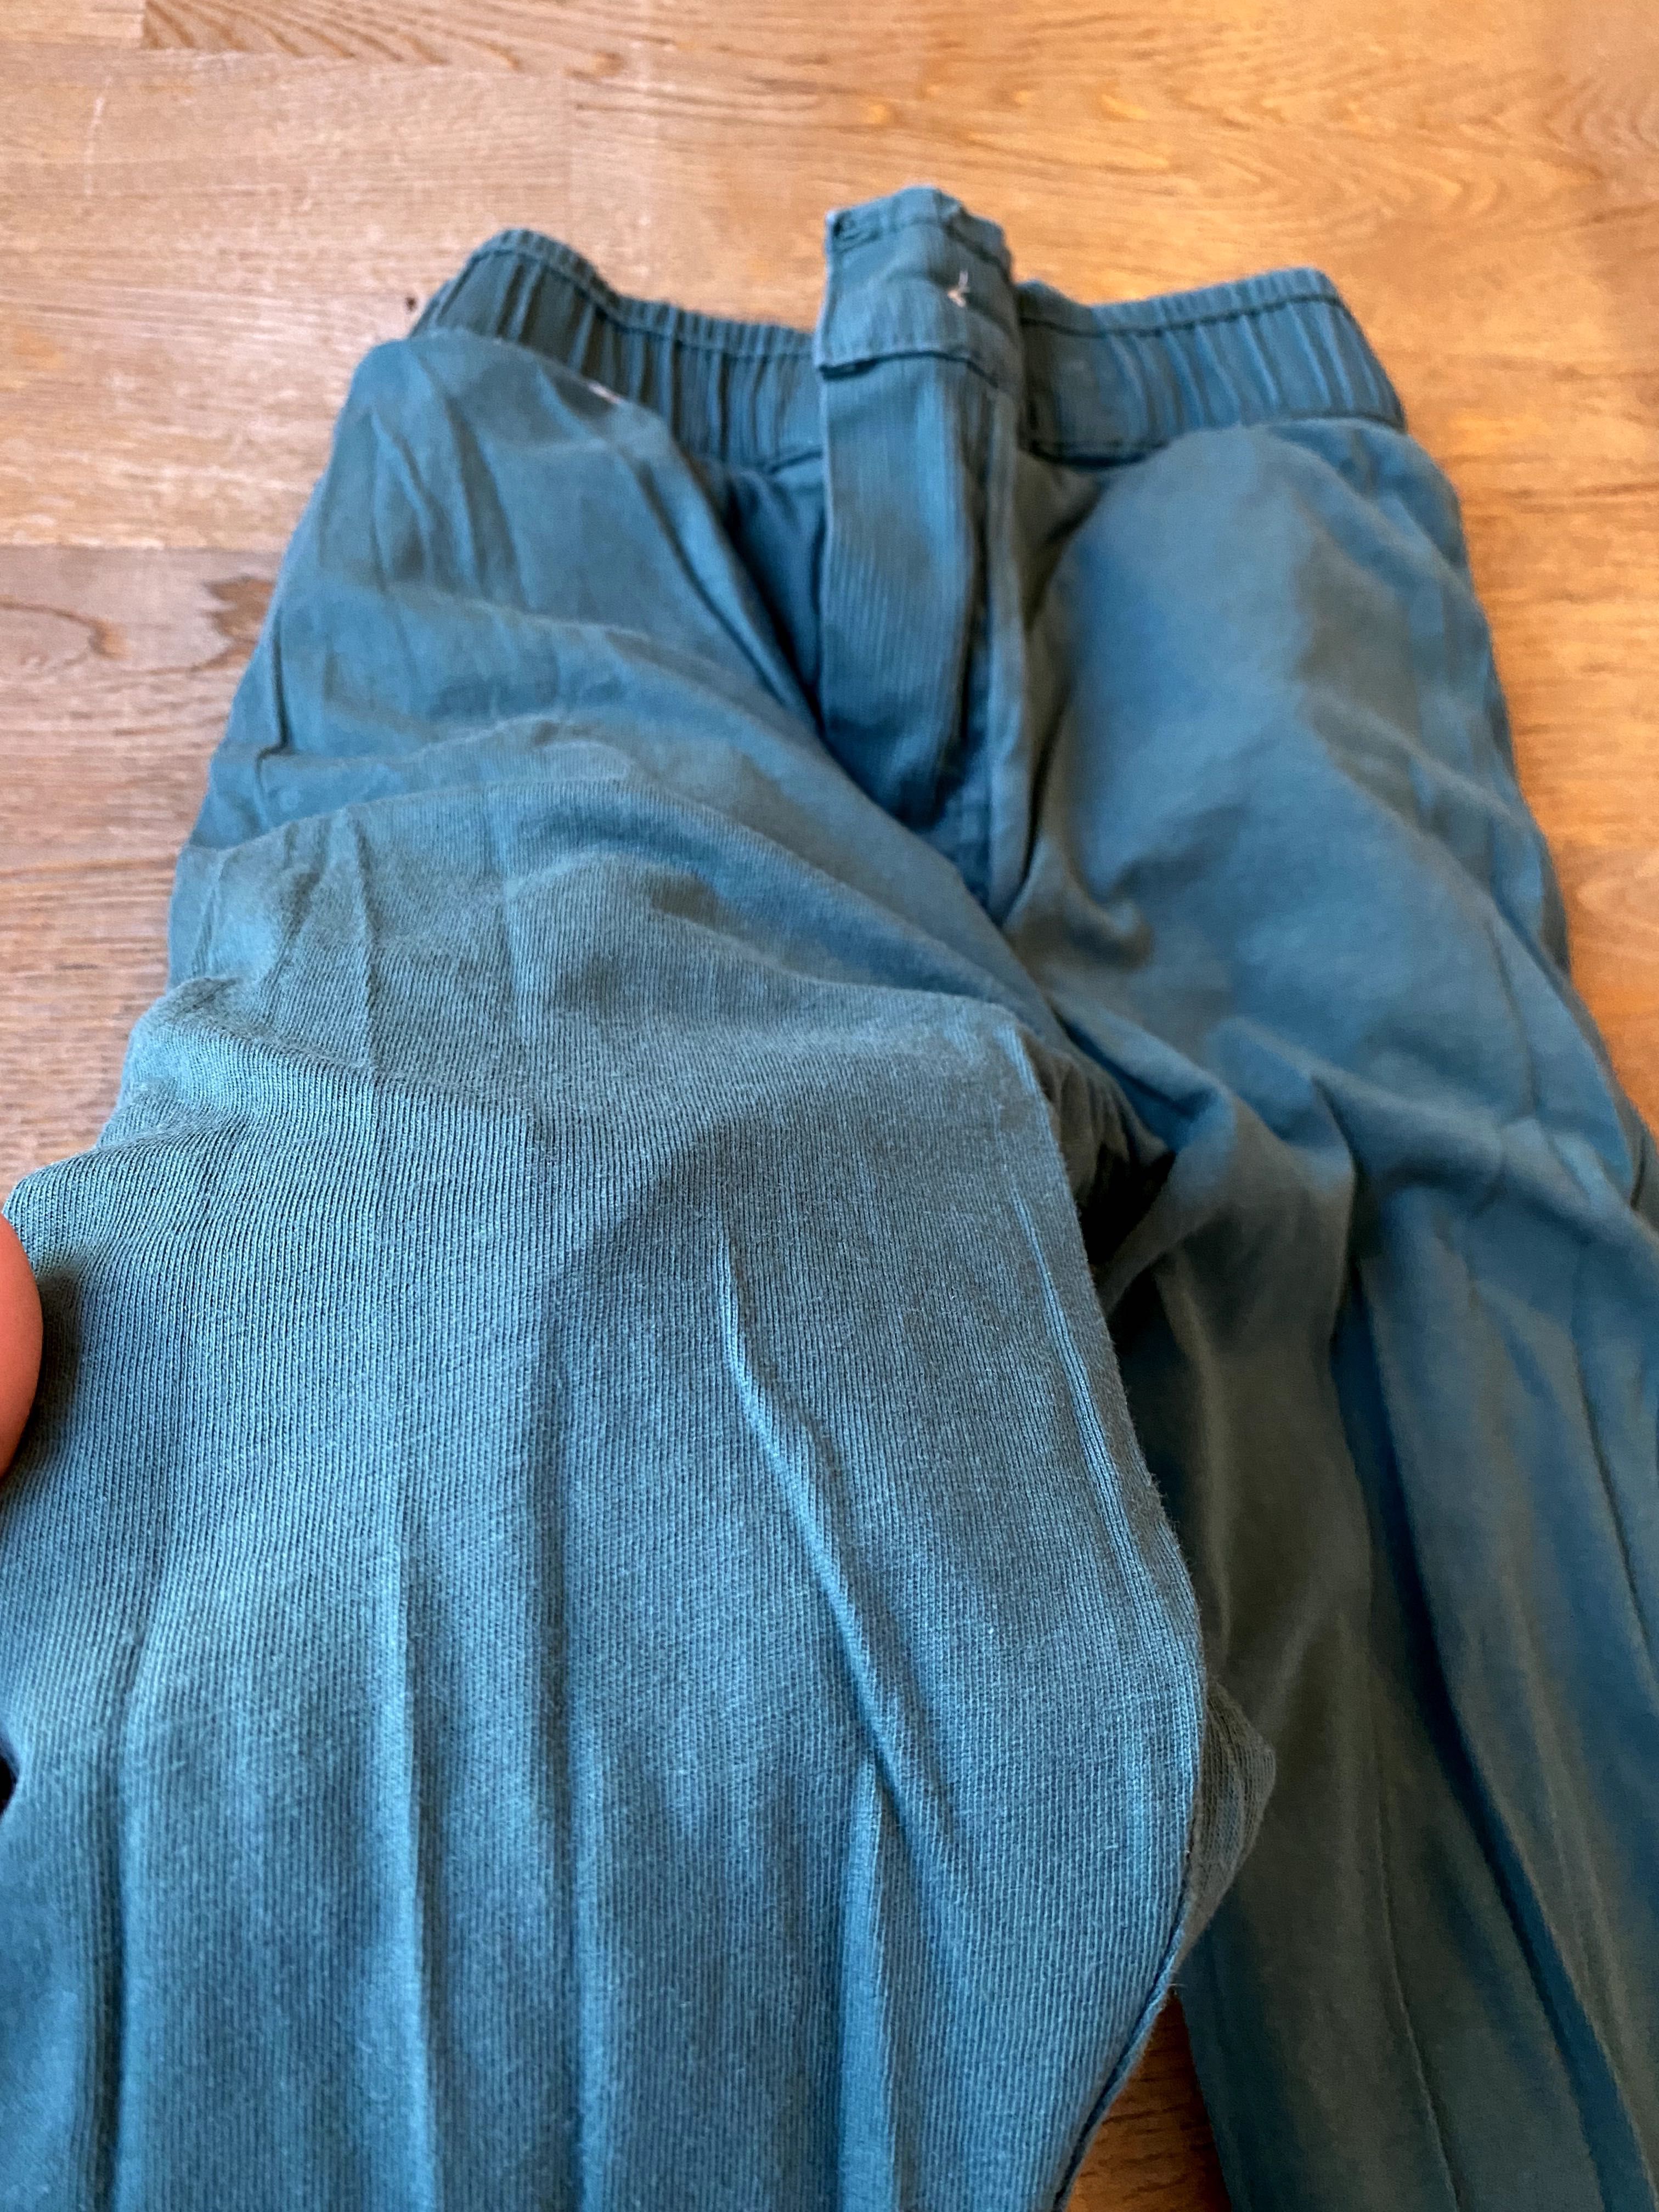 COOL CLUB spodnie chłopięce, rozmiar 110 cm